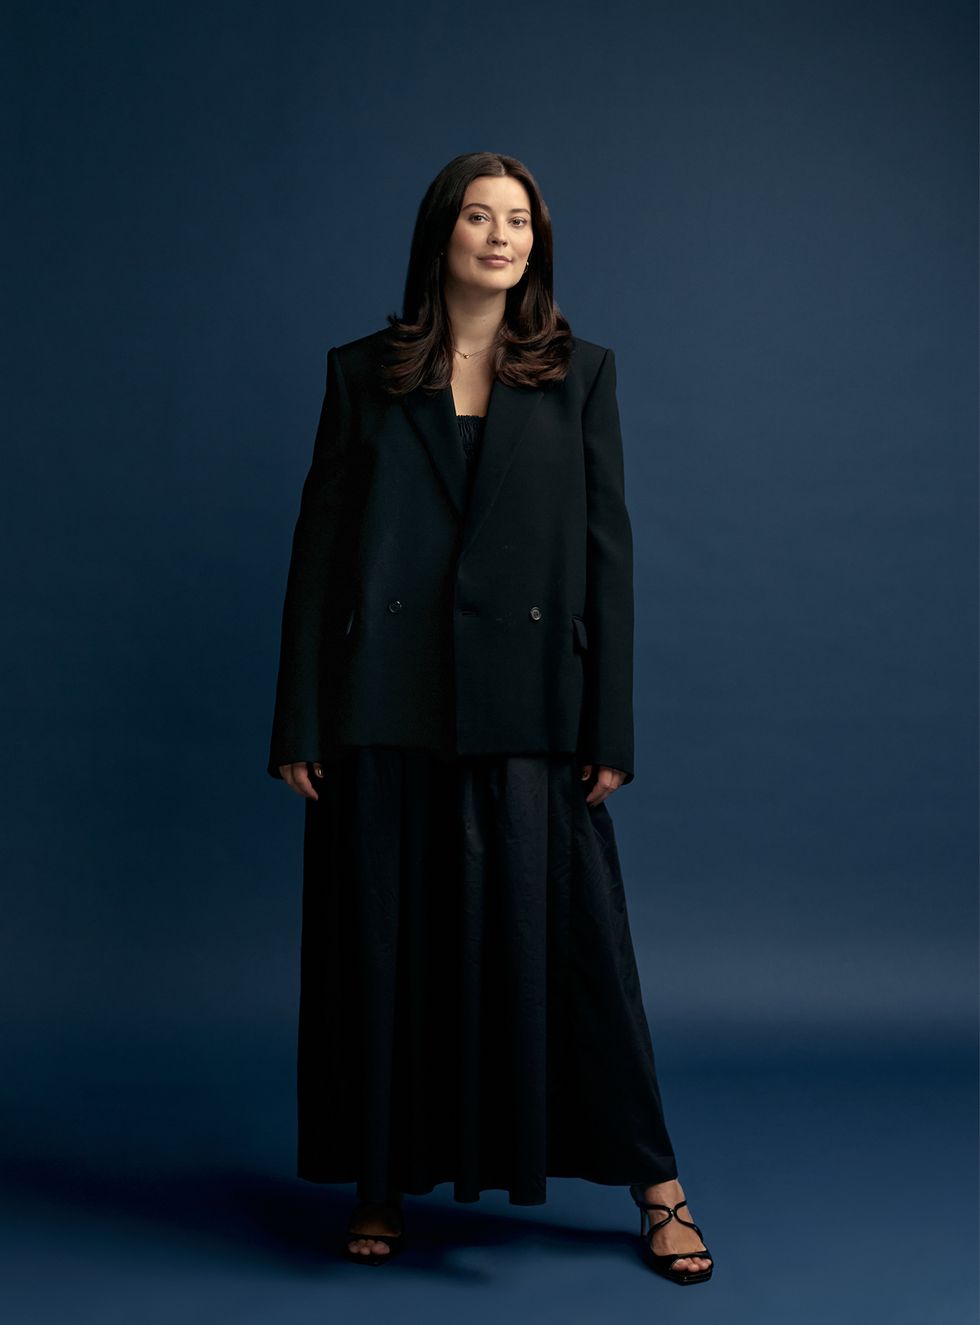 Harper's Bazaar + Veuve Clicquot event: future of fashion